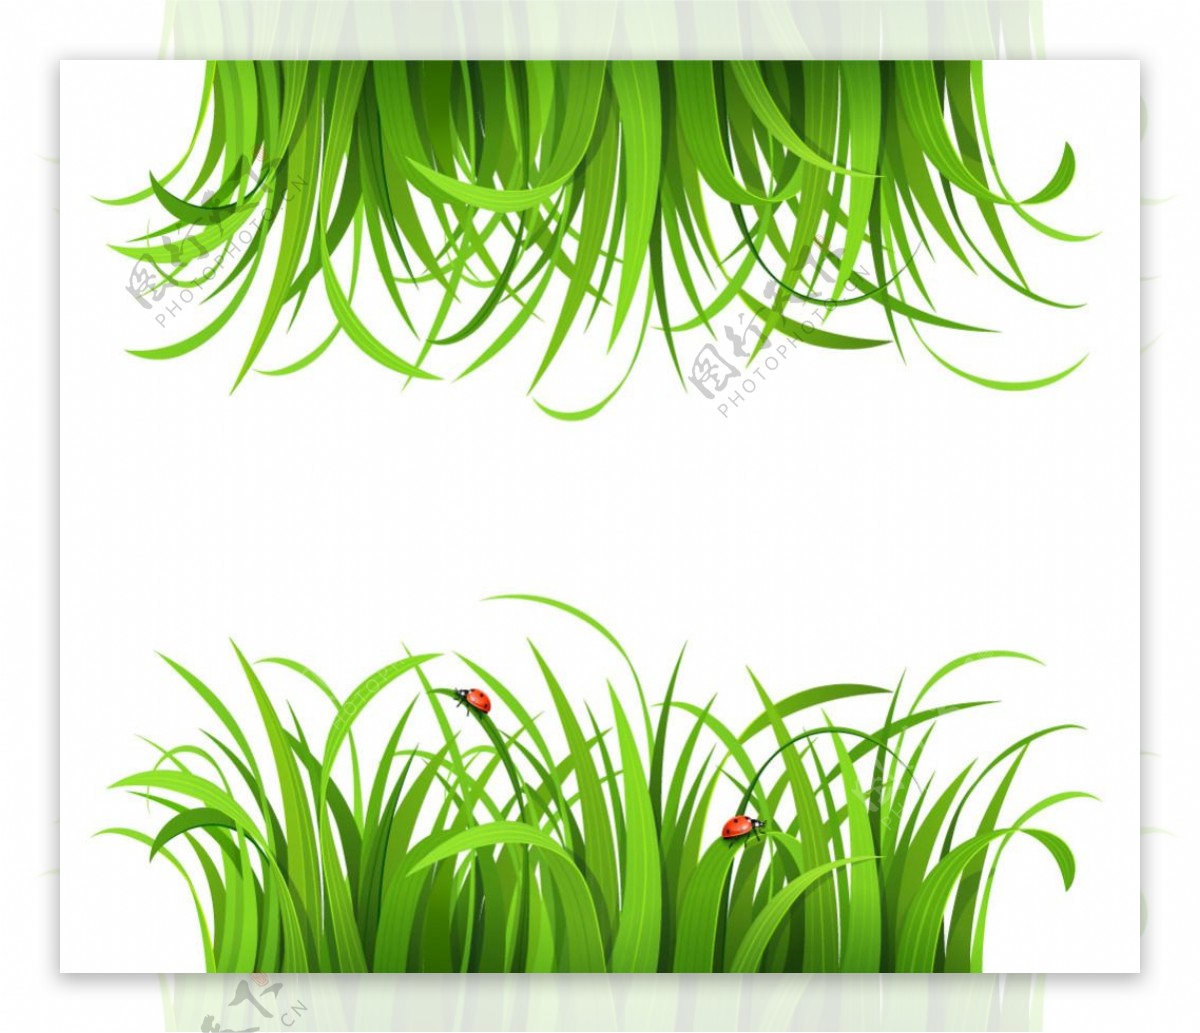 绿色草地瓢虫设计矢量素材